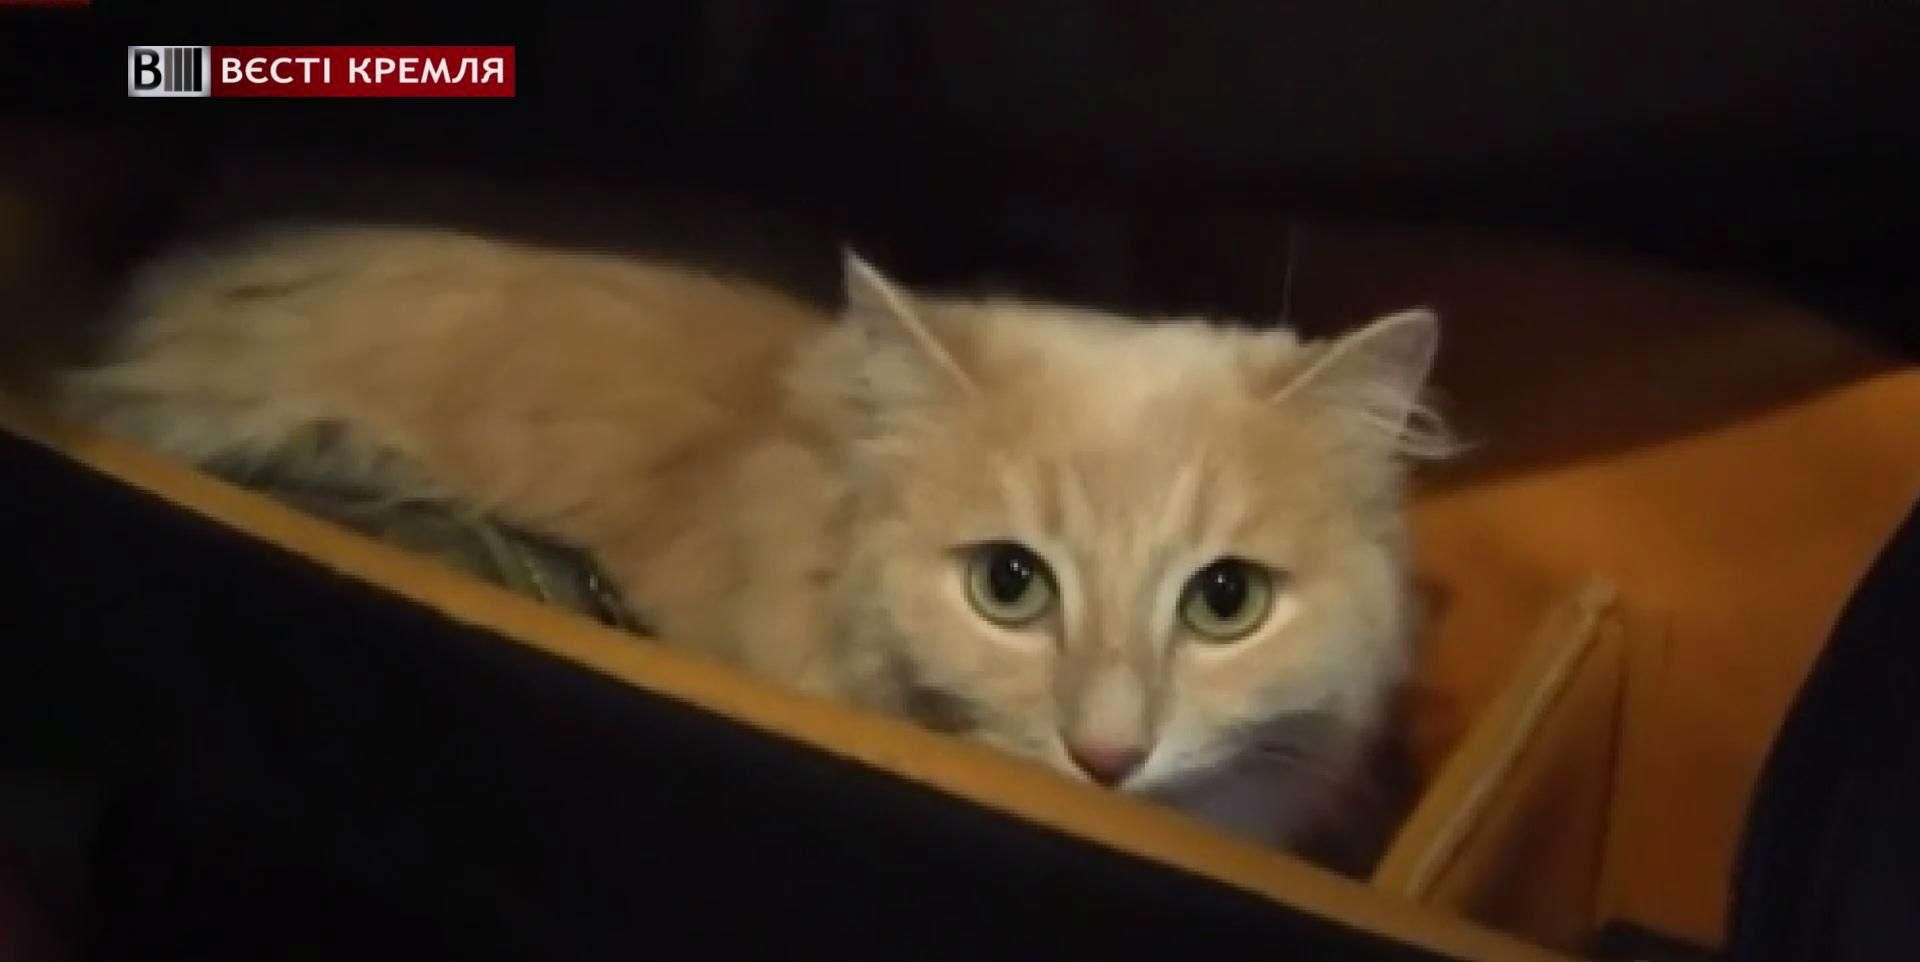 В России открыли публичный дом для кошек